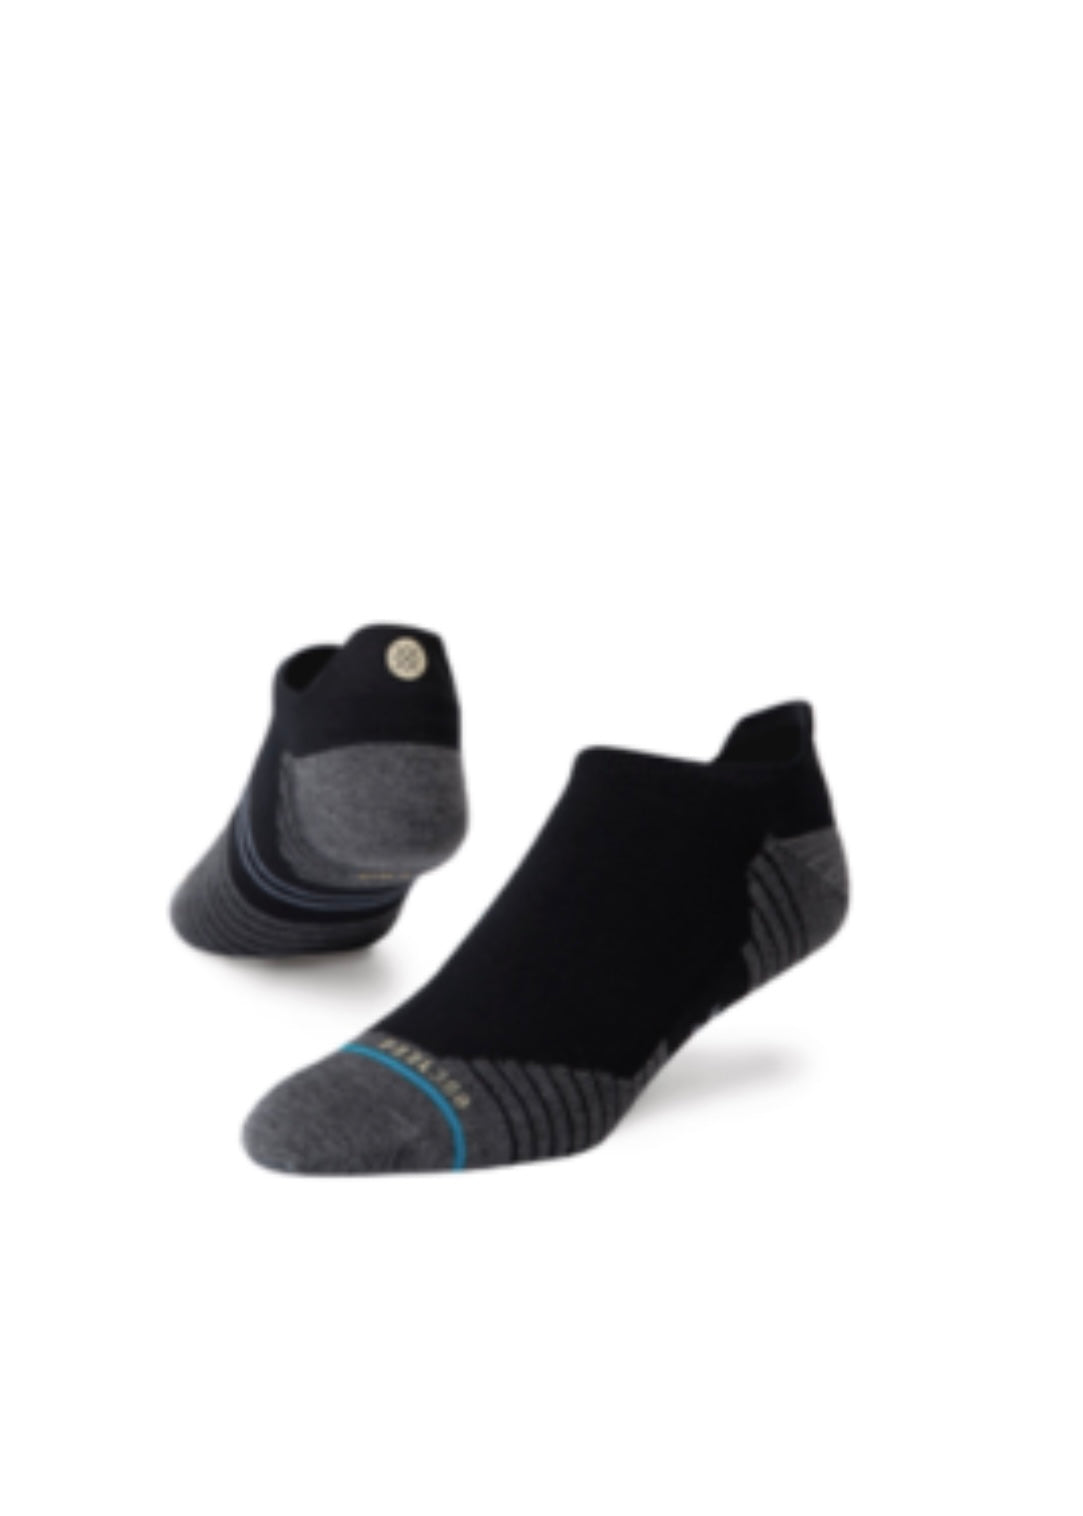 Light Tab Socks - Black